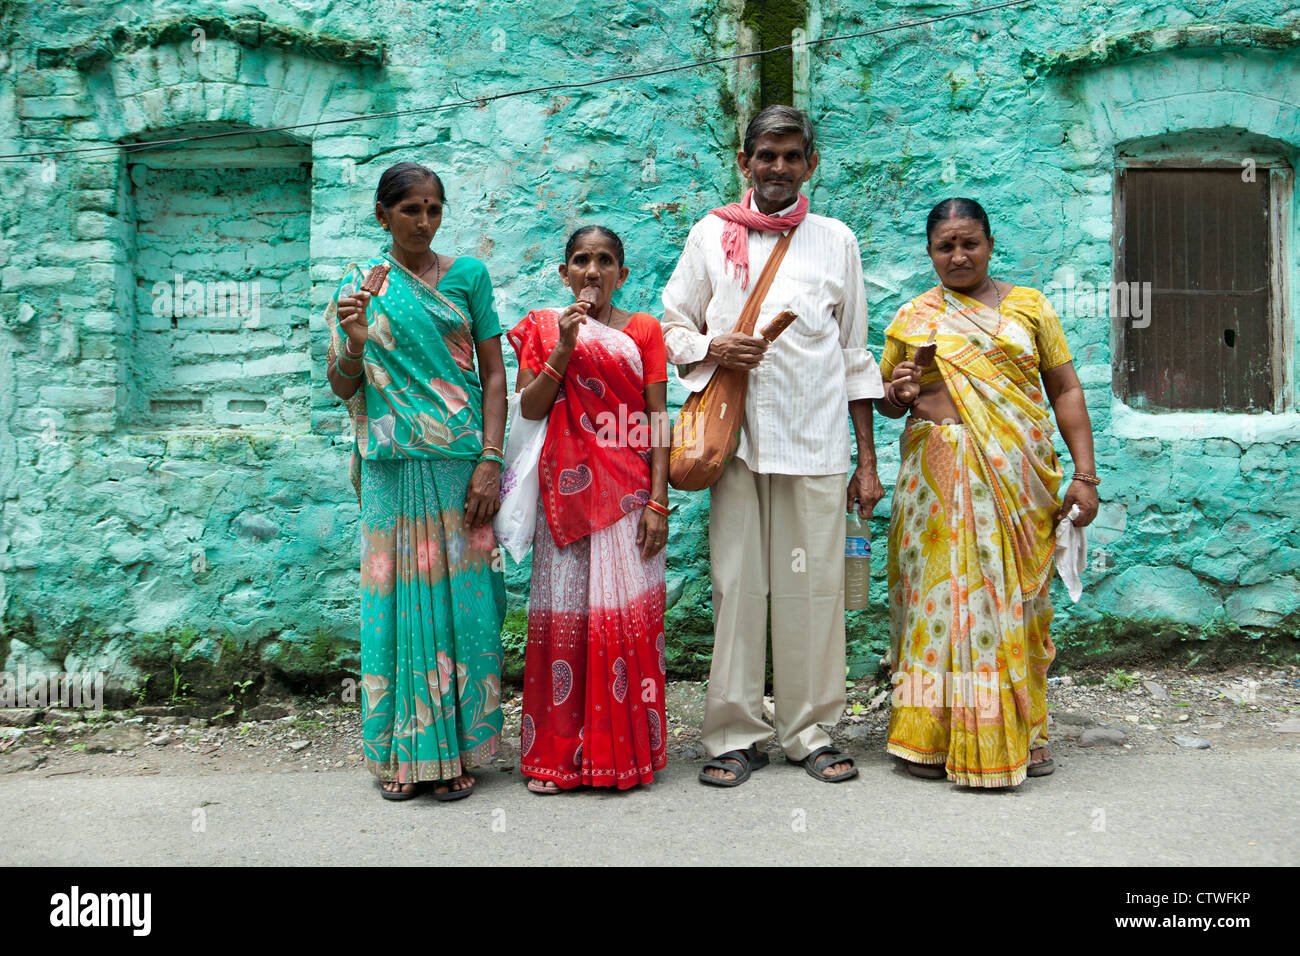 people inhabitants of India Stock Photo